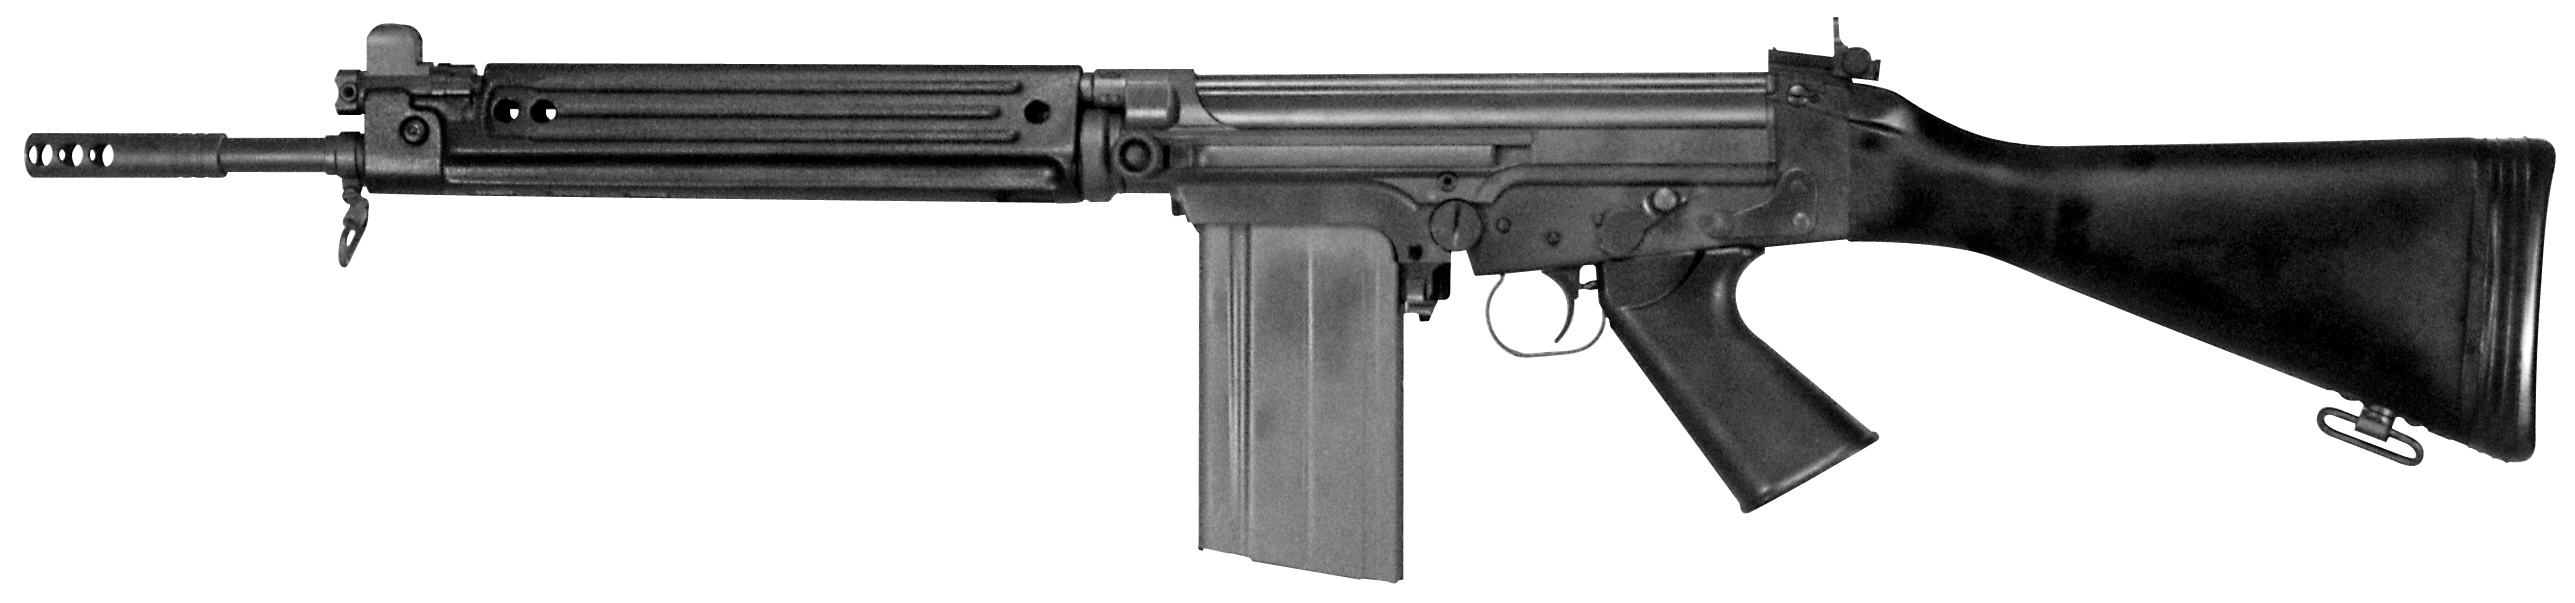 SA58 Carbine